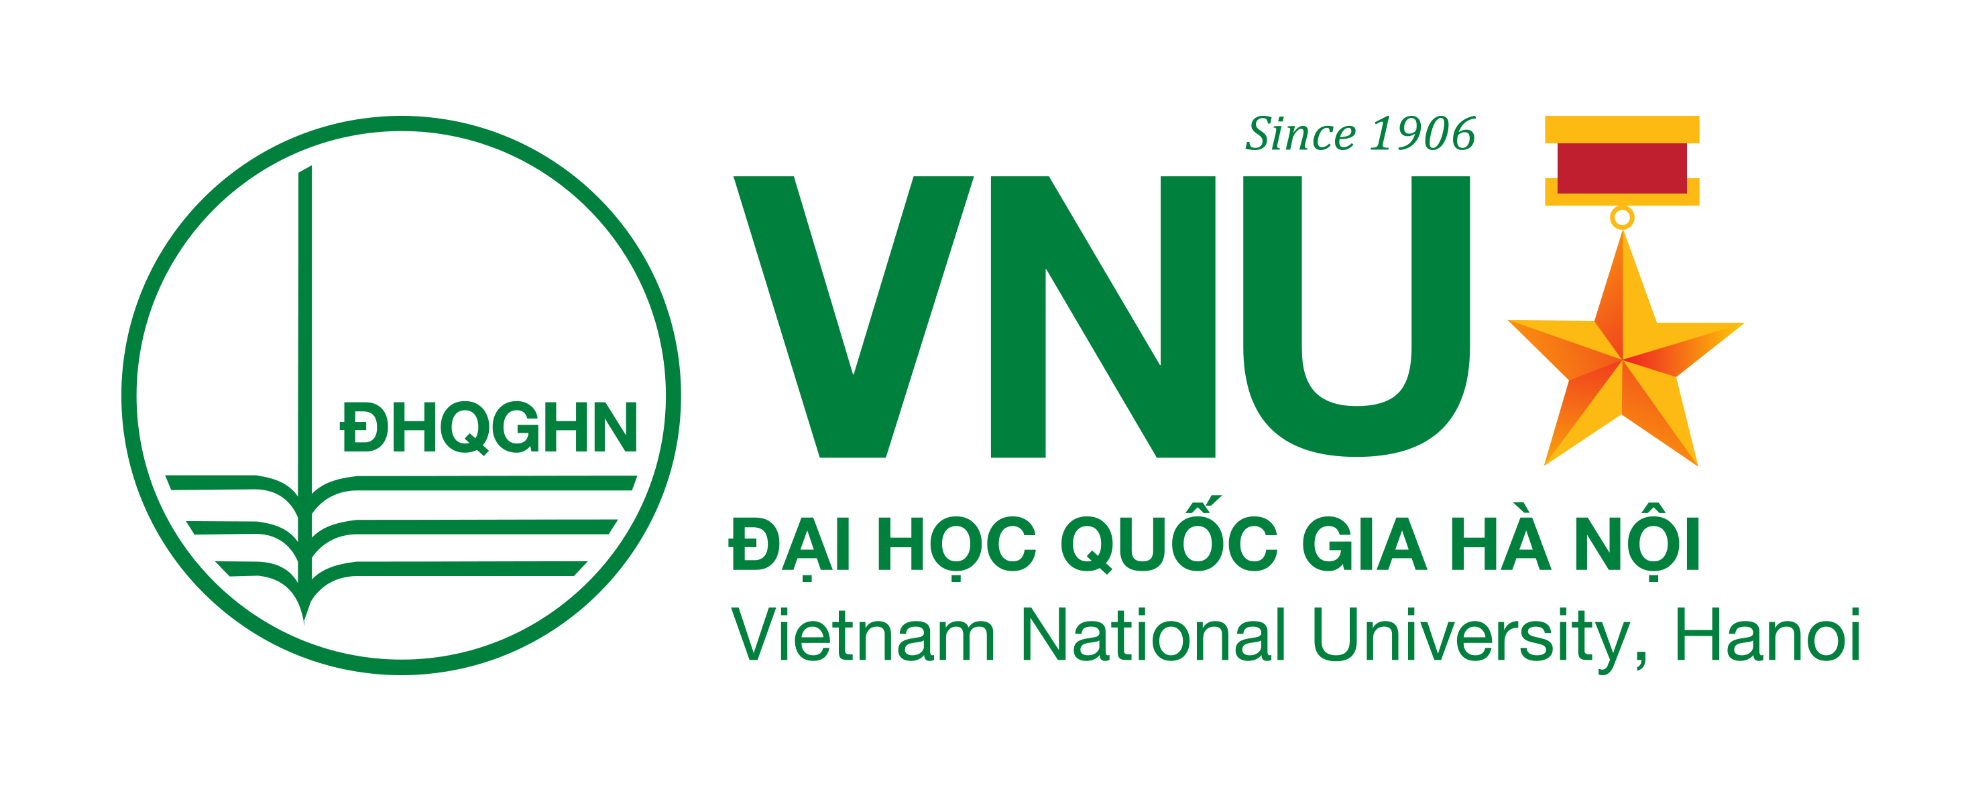 NXB ĐHQGHN - Nhà xuất bản Đại học Quốc gia Hà Nội